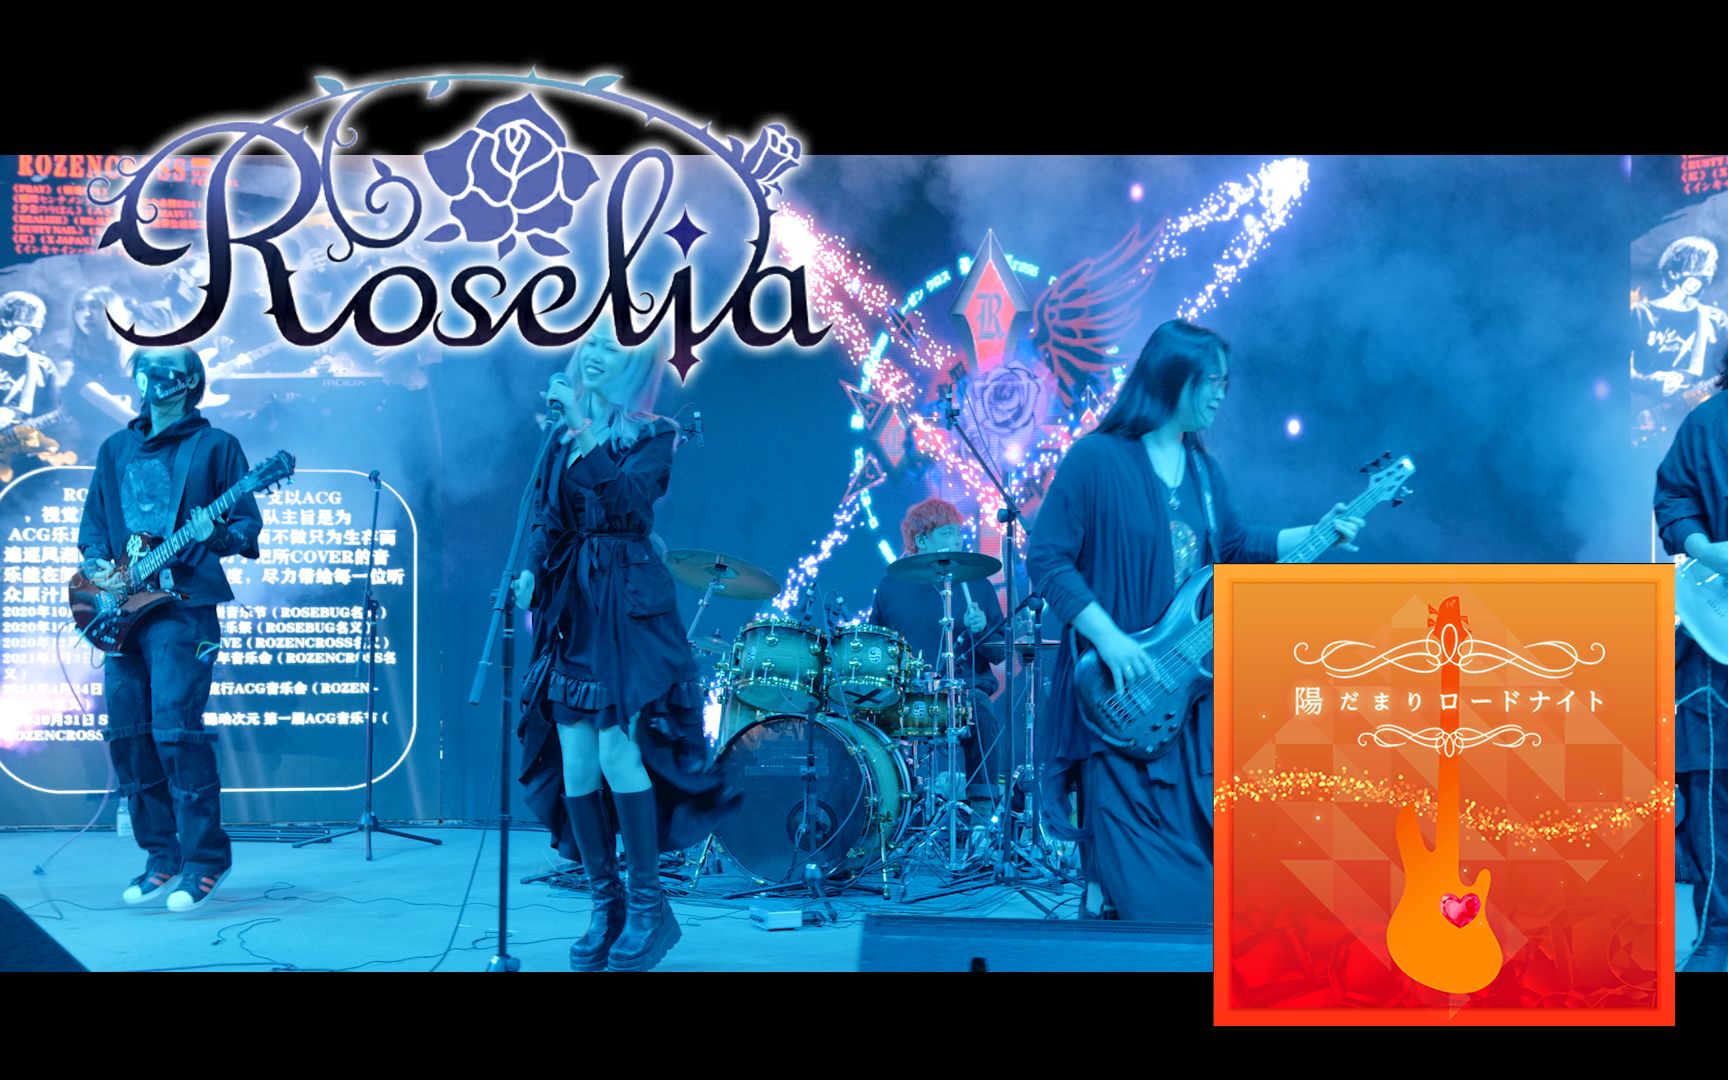 [图]Roselia-陽だまりロードナイト cover by RozenCross 乐队 2022.01.02岭南之巅音乐节